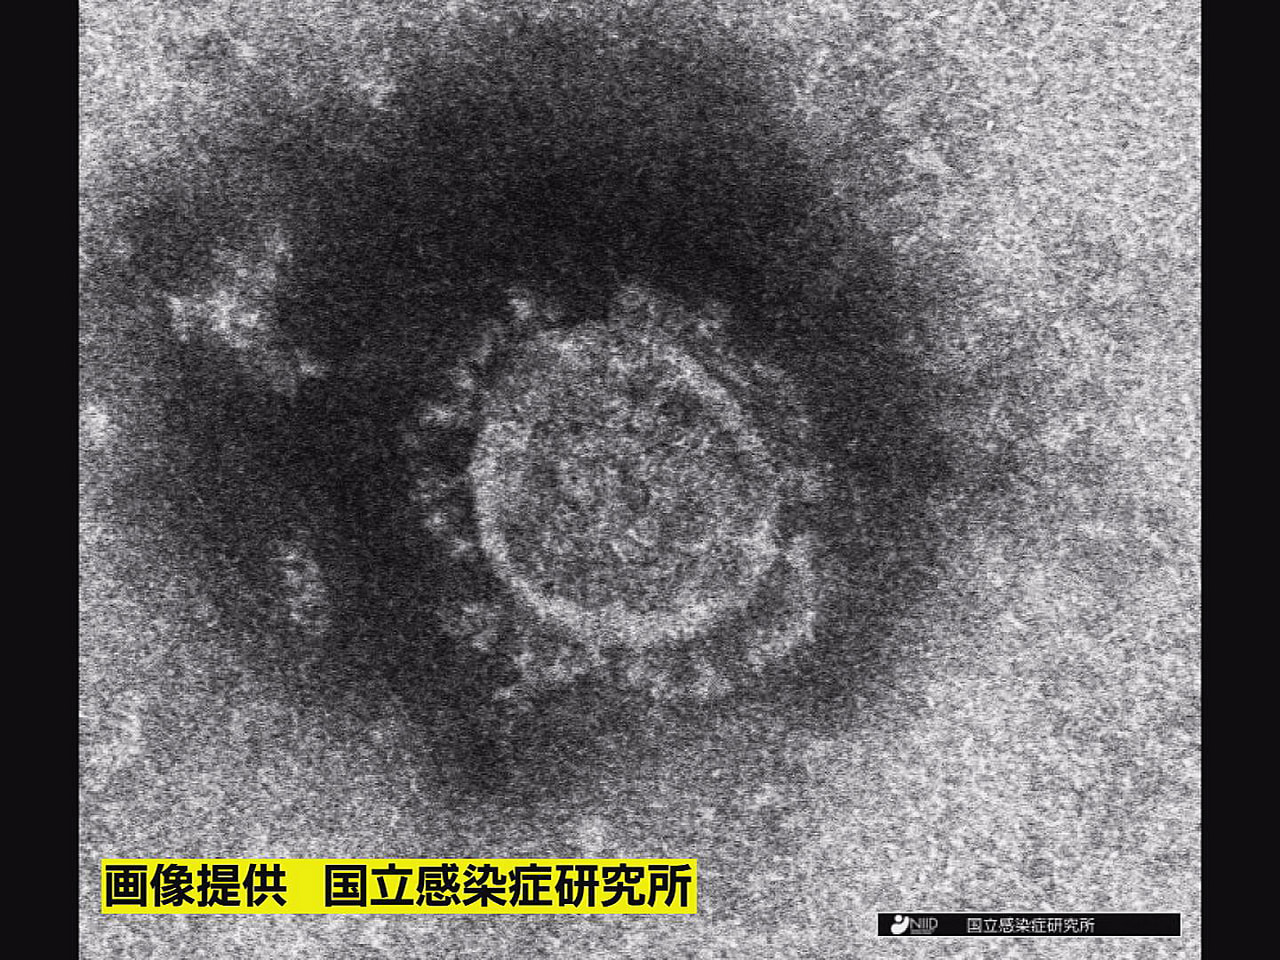 岐阜県は１８日、新型コロナウイルスの新規感染者が３２６人確認されたと発表しました...